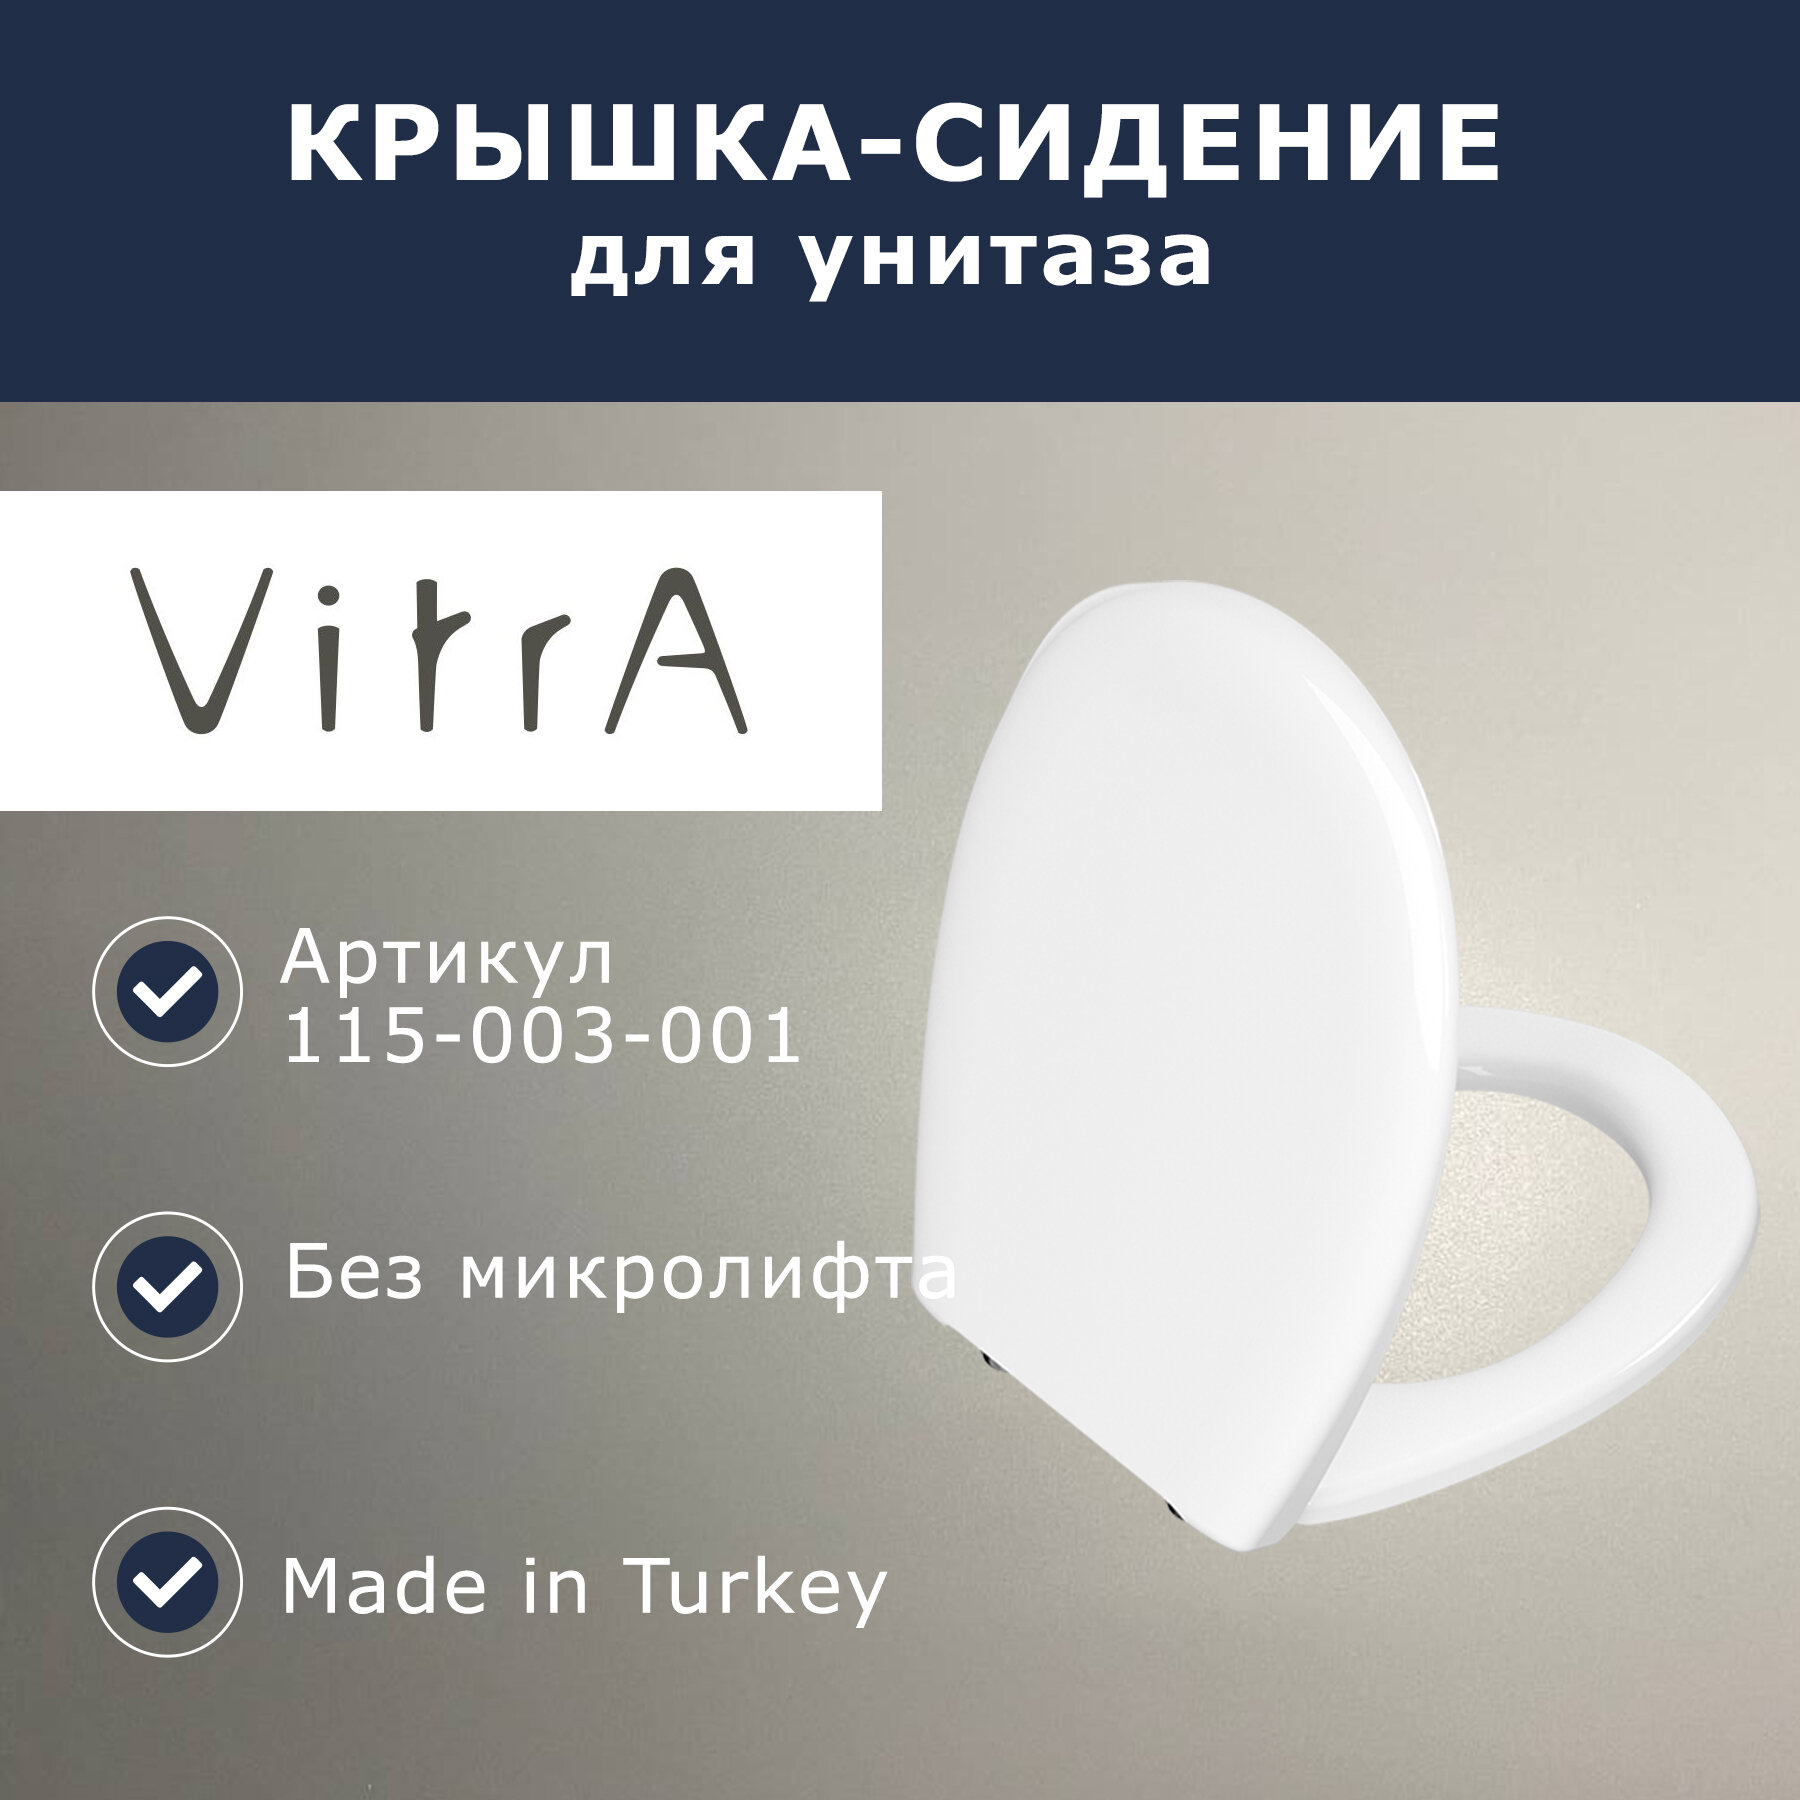 Сидение для унитаза Vitra (115-003-001)